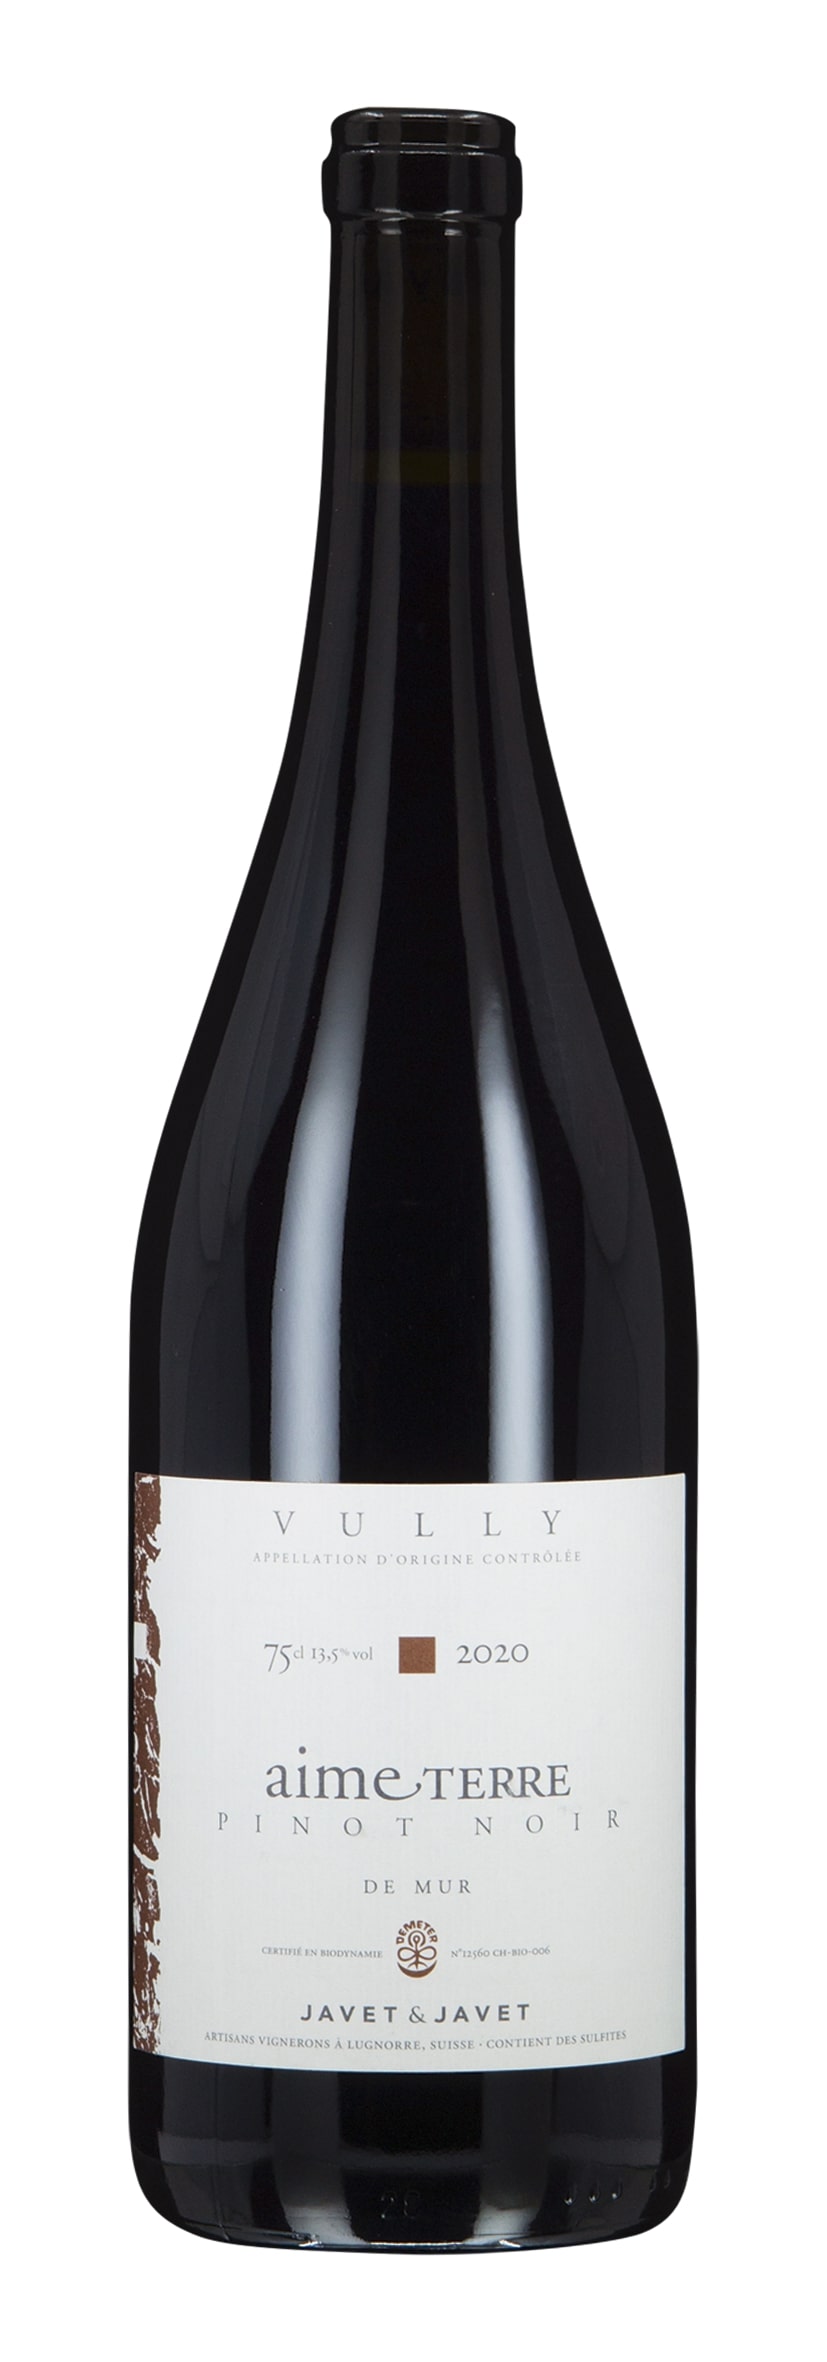 Vully AOC - Fribourg Pinot Noir Aime Terre de Mur 2020